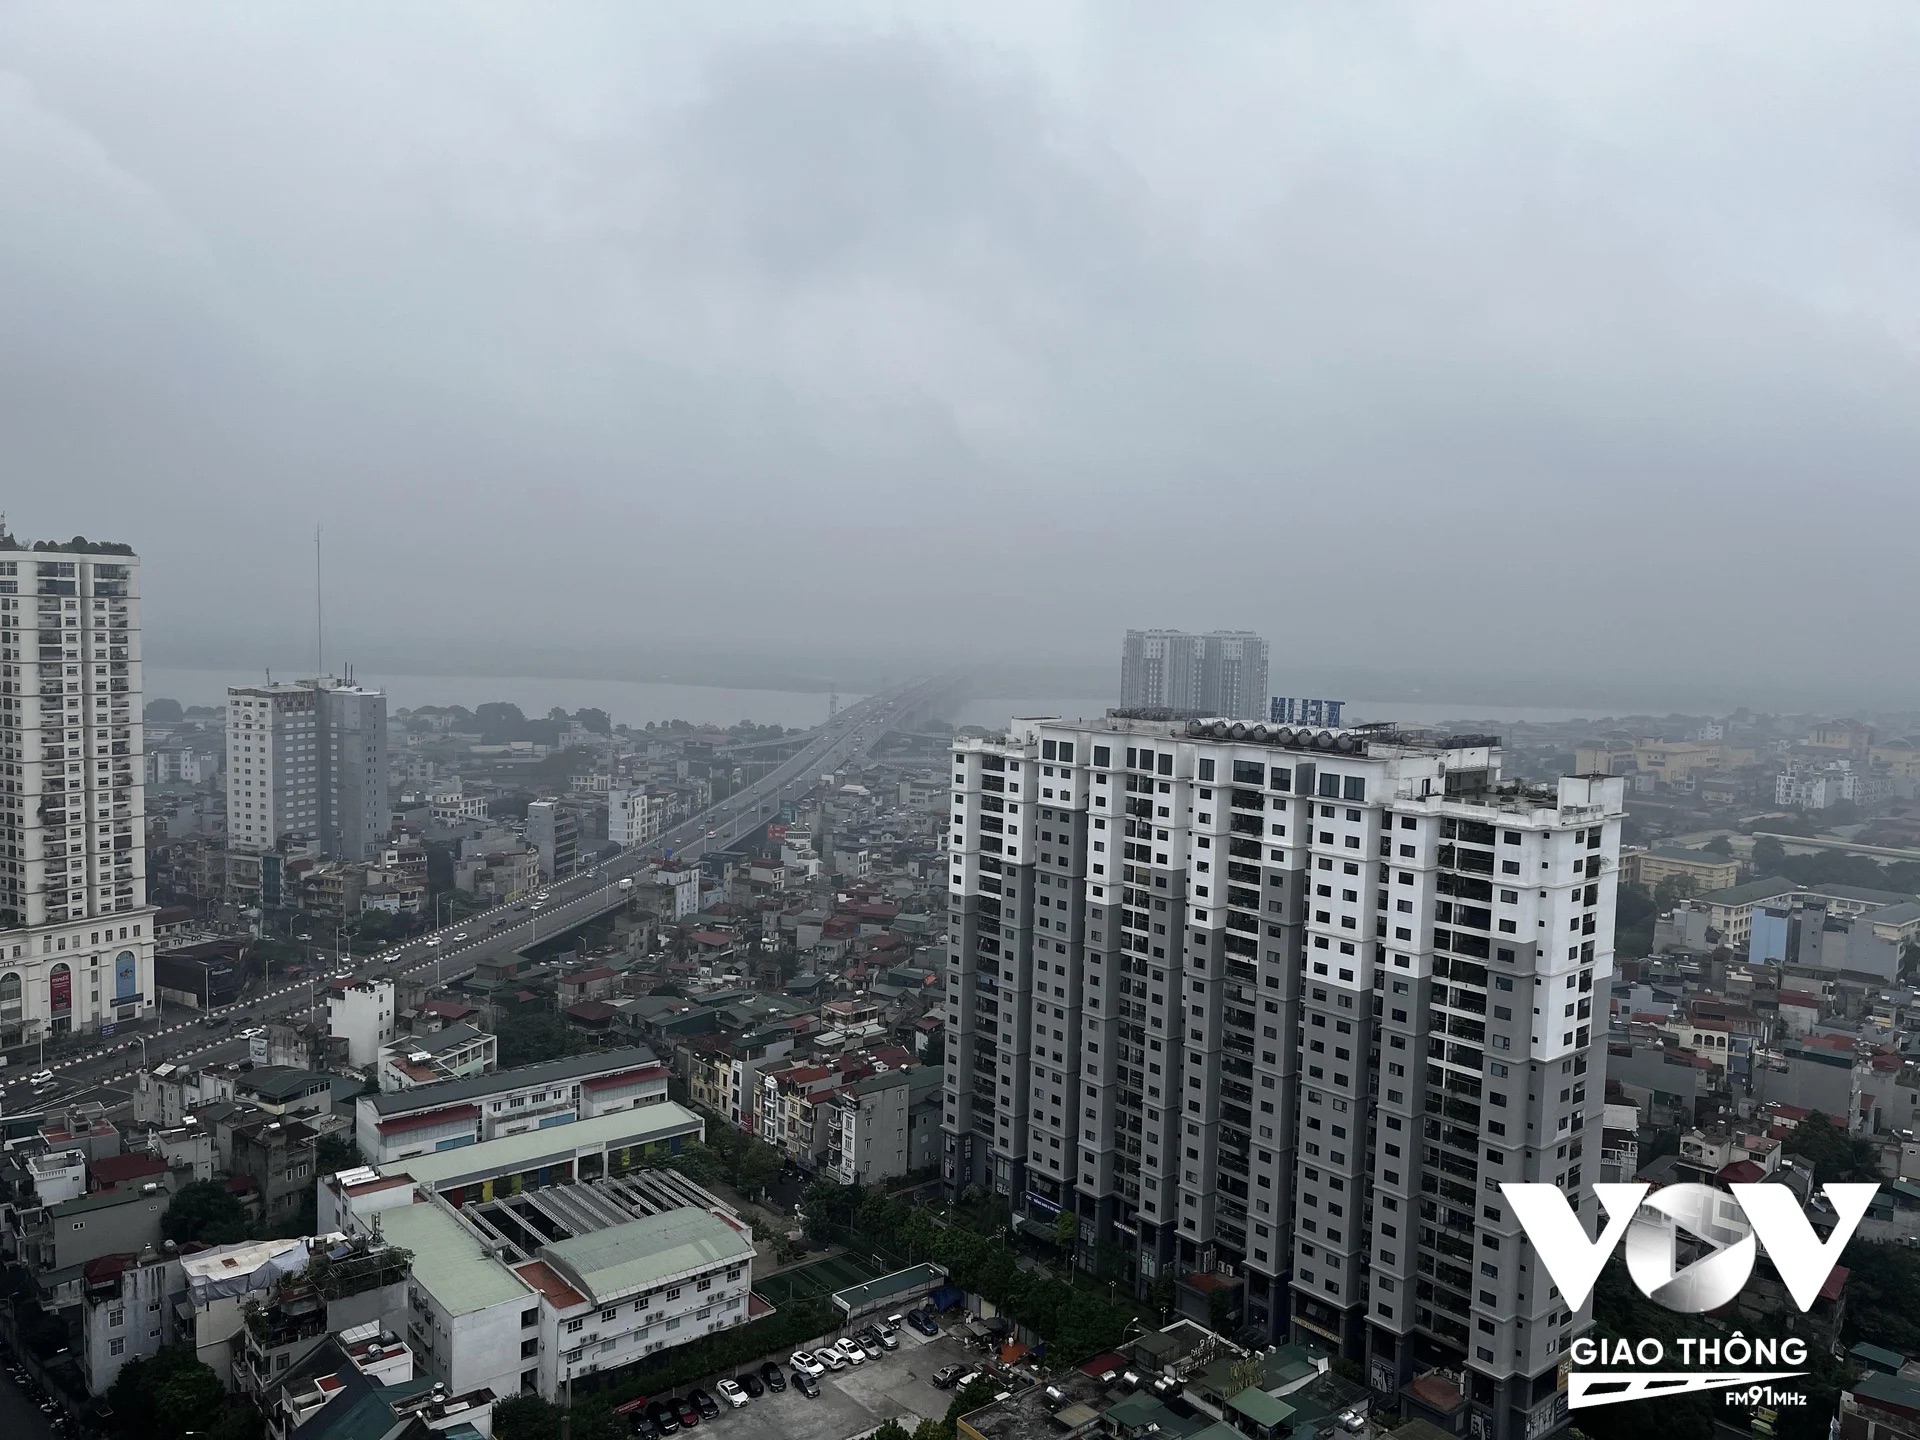 Lượng phương tiện gia tăng, cùng với thiếu biện pháp bảo vệ môi trường đang khiến Thủ đô Hà Nội là một trong những thành phố ô nhiễm nhất trên thế giới (Ảnh: Quang Hùng/VOVGT)